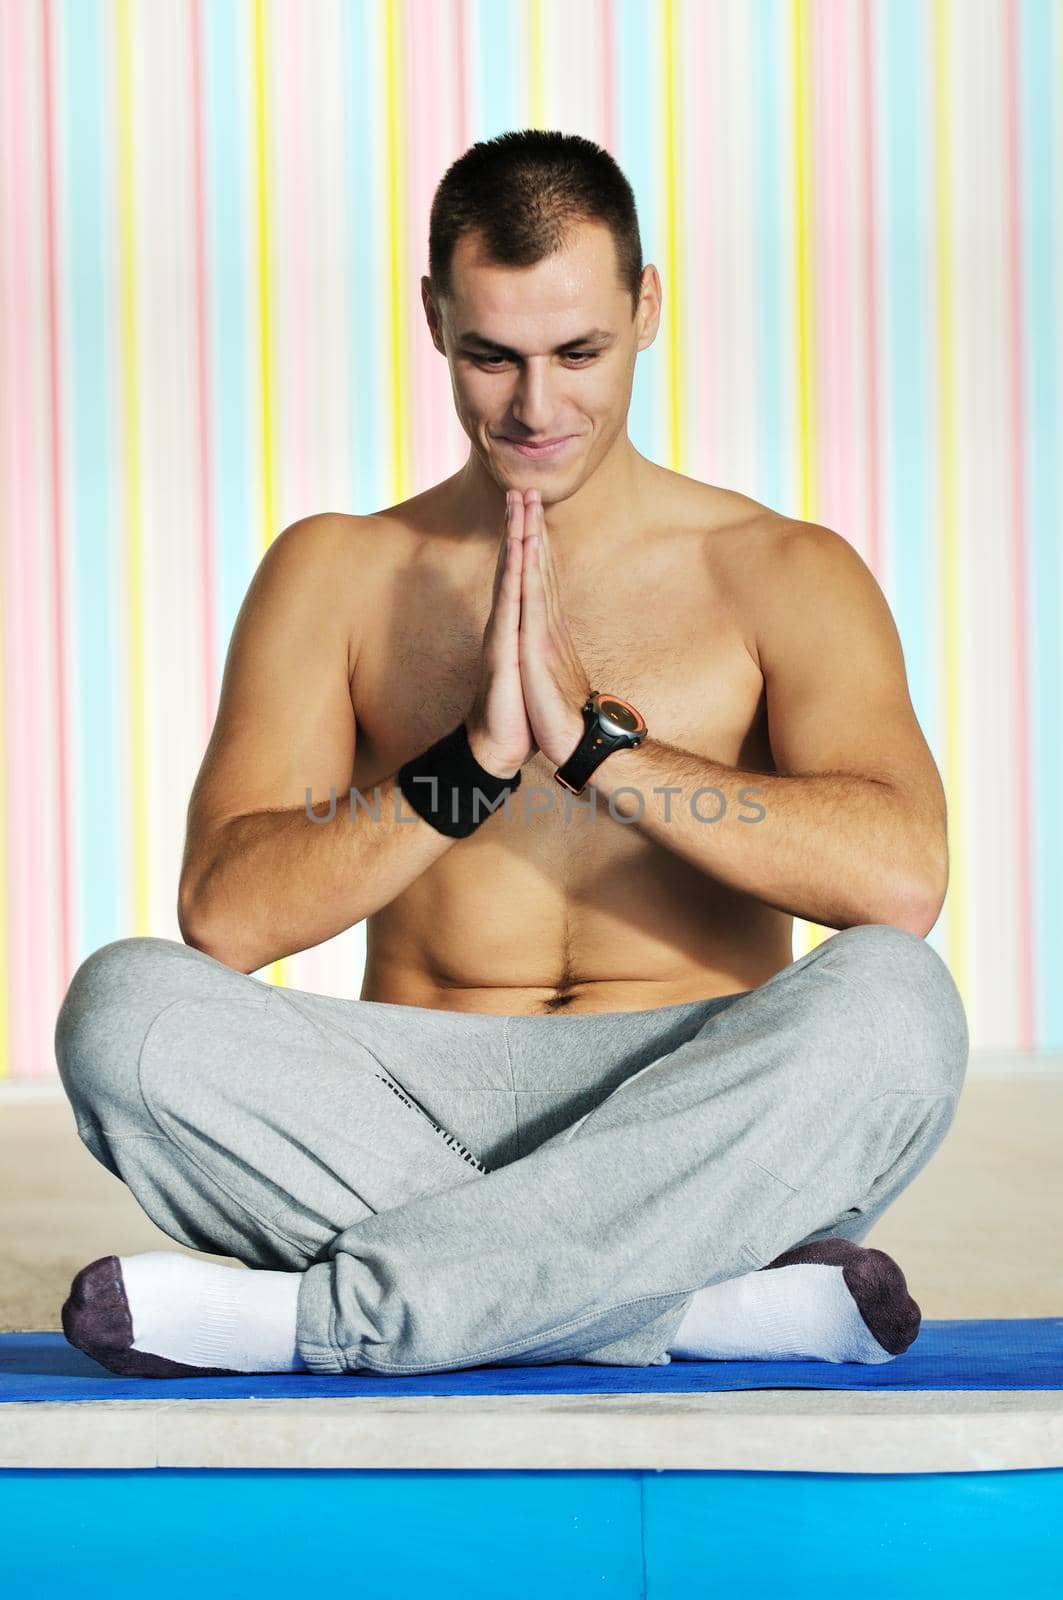 yoga man by dotshock